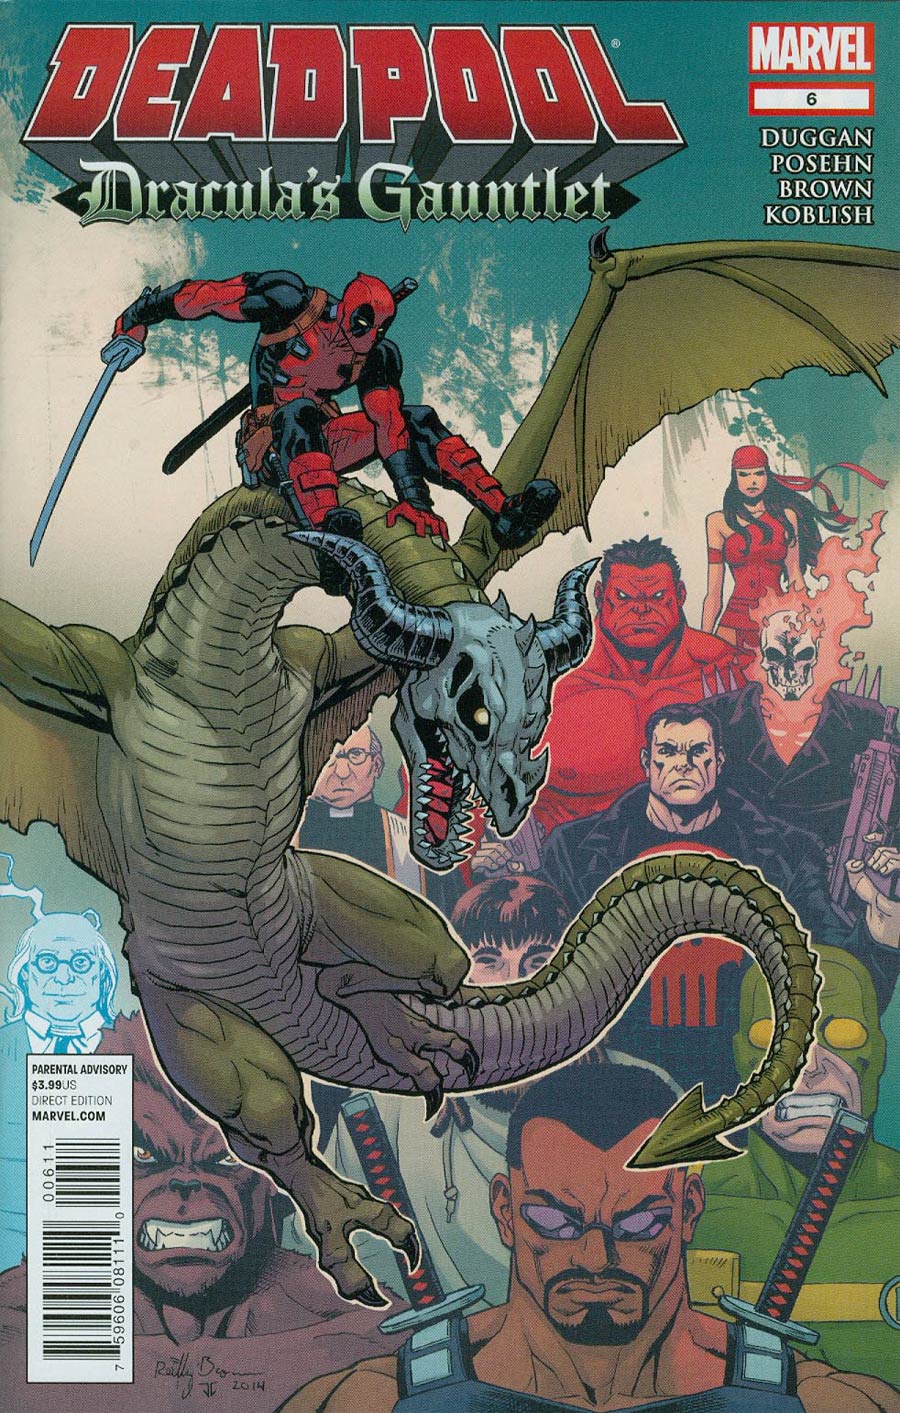 Deadpool Draculas Gauntlet #6